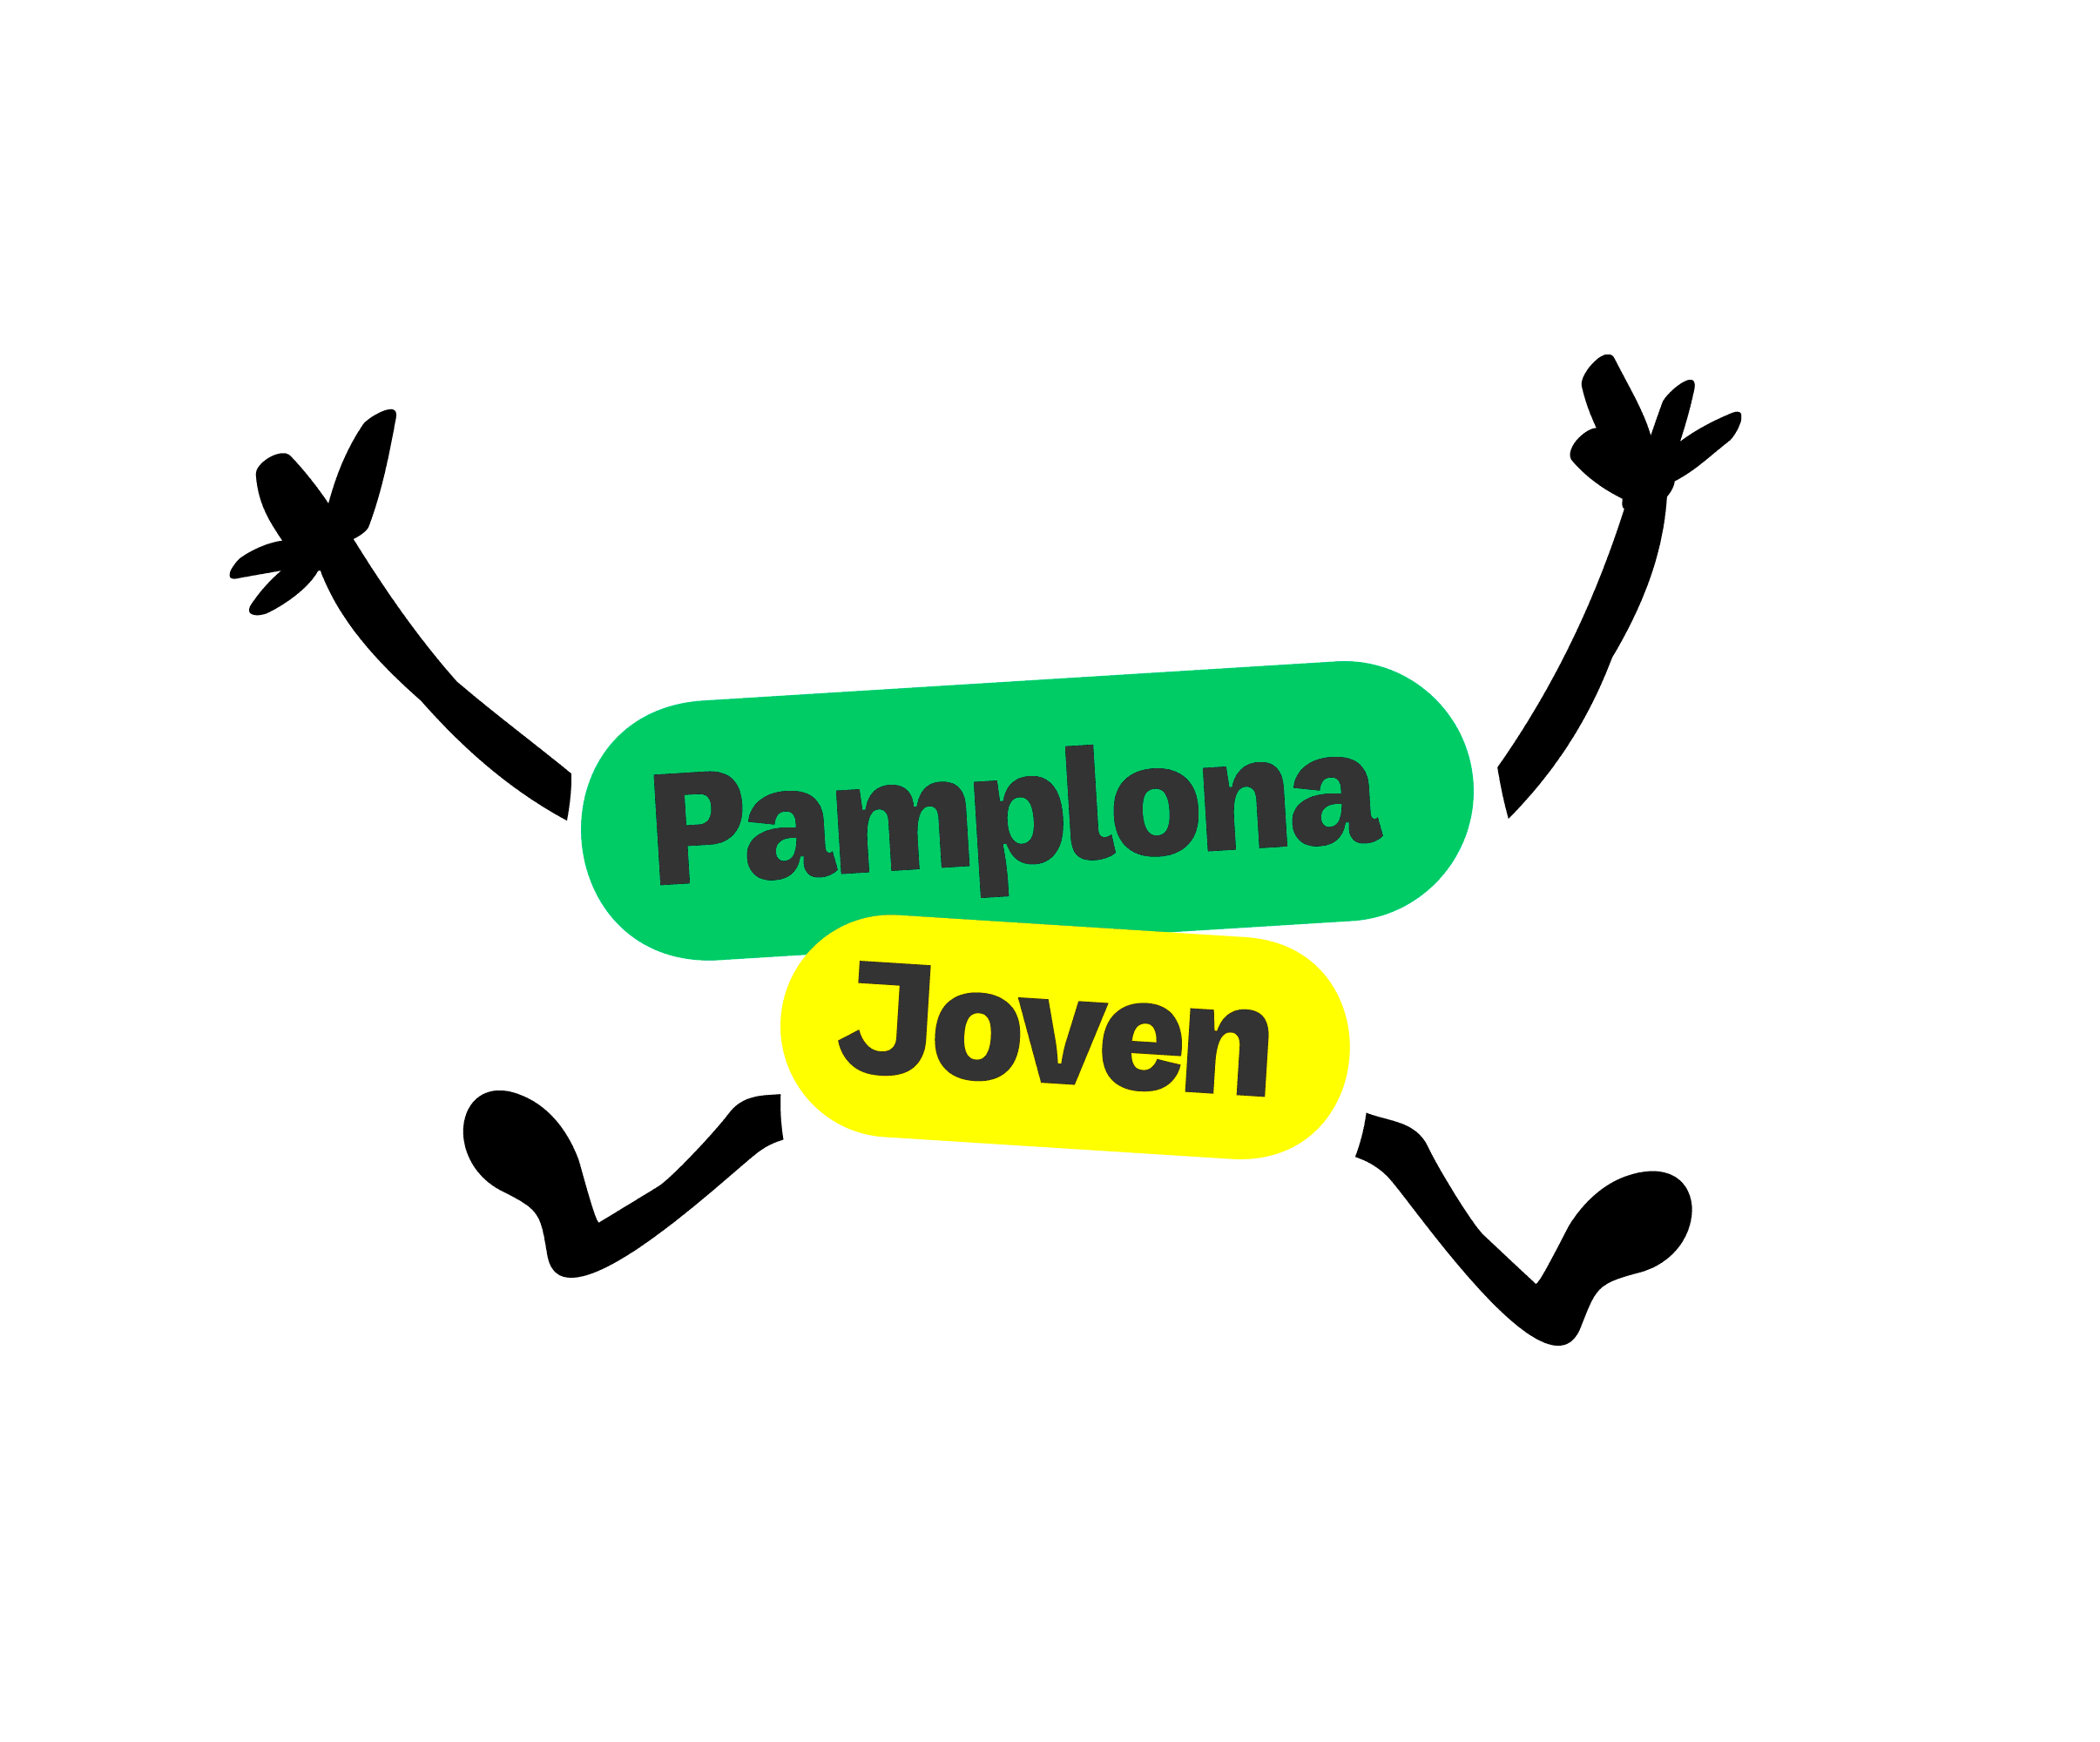 El III Plan Pamplona Joven convierte a la juventud en un elemento transversal clave de la actividad municipal